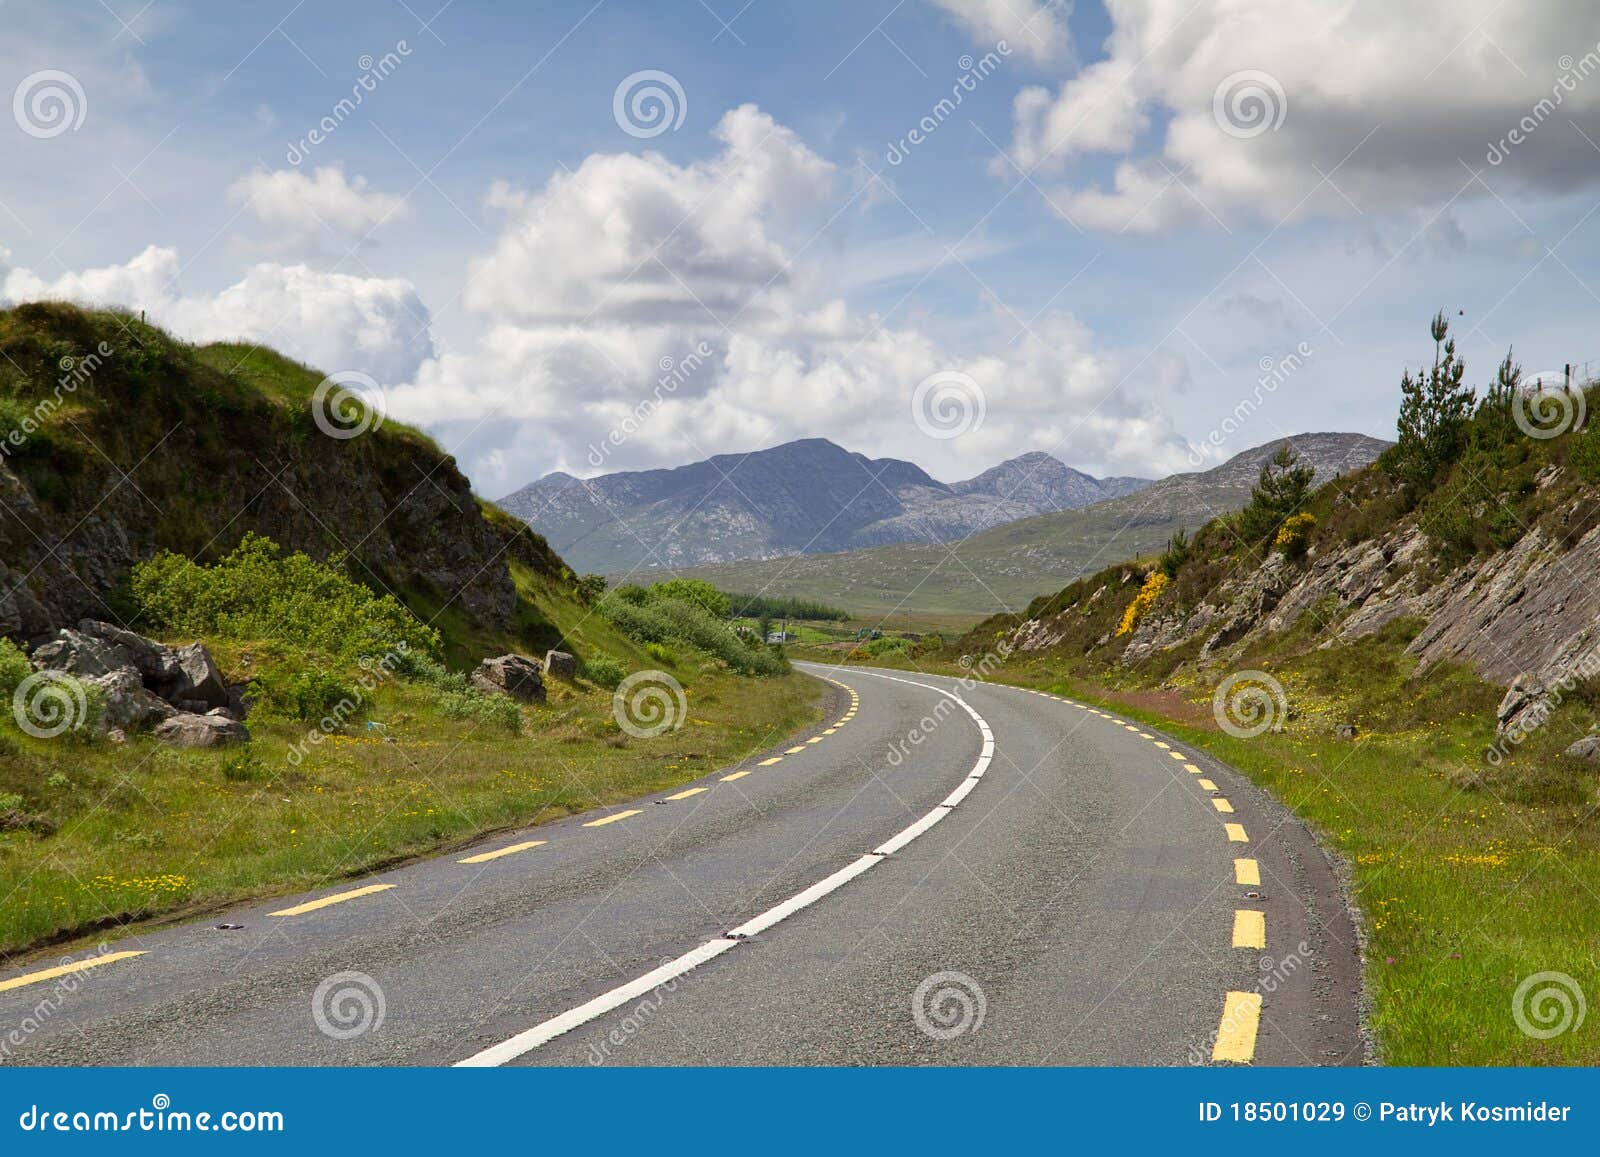 Irische Straße. Straße in den Connemara Bergen - Irland